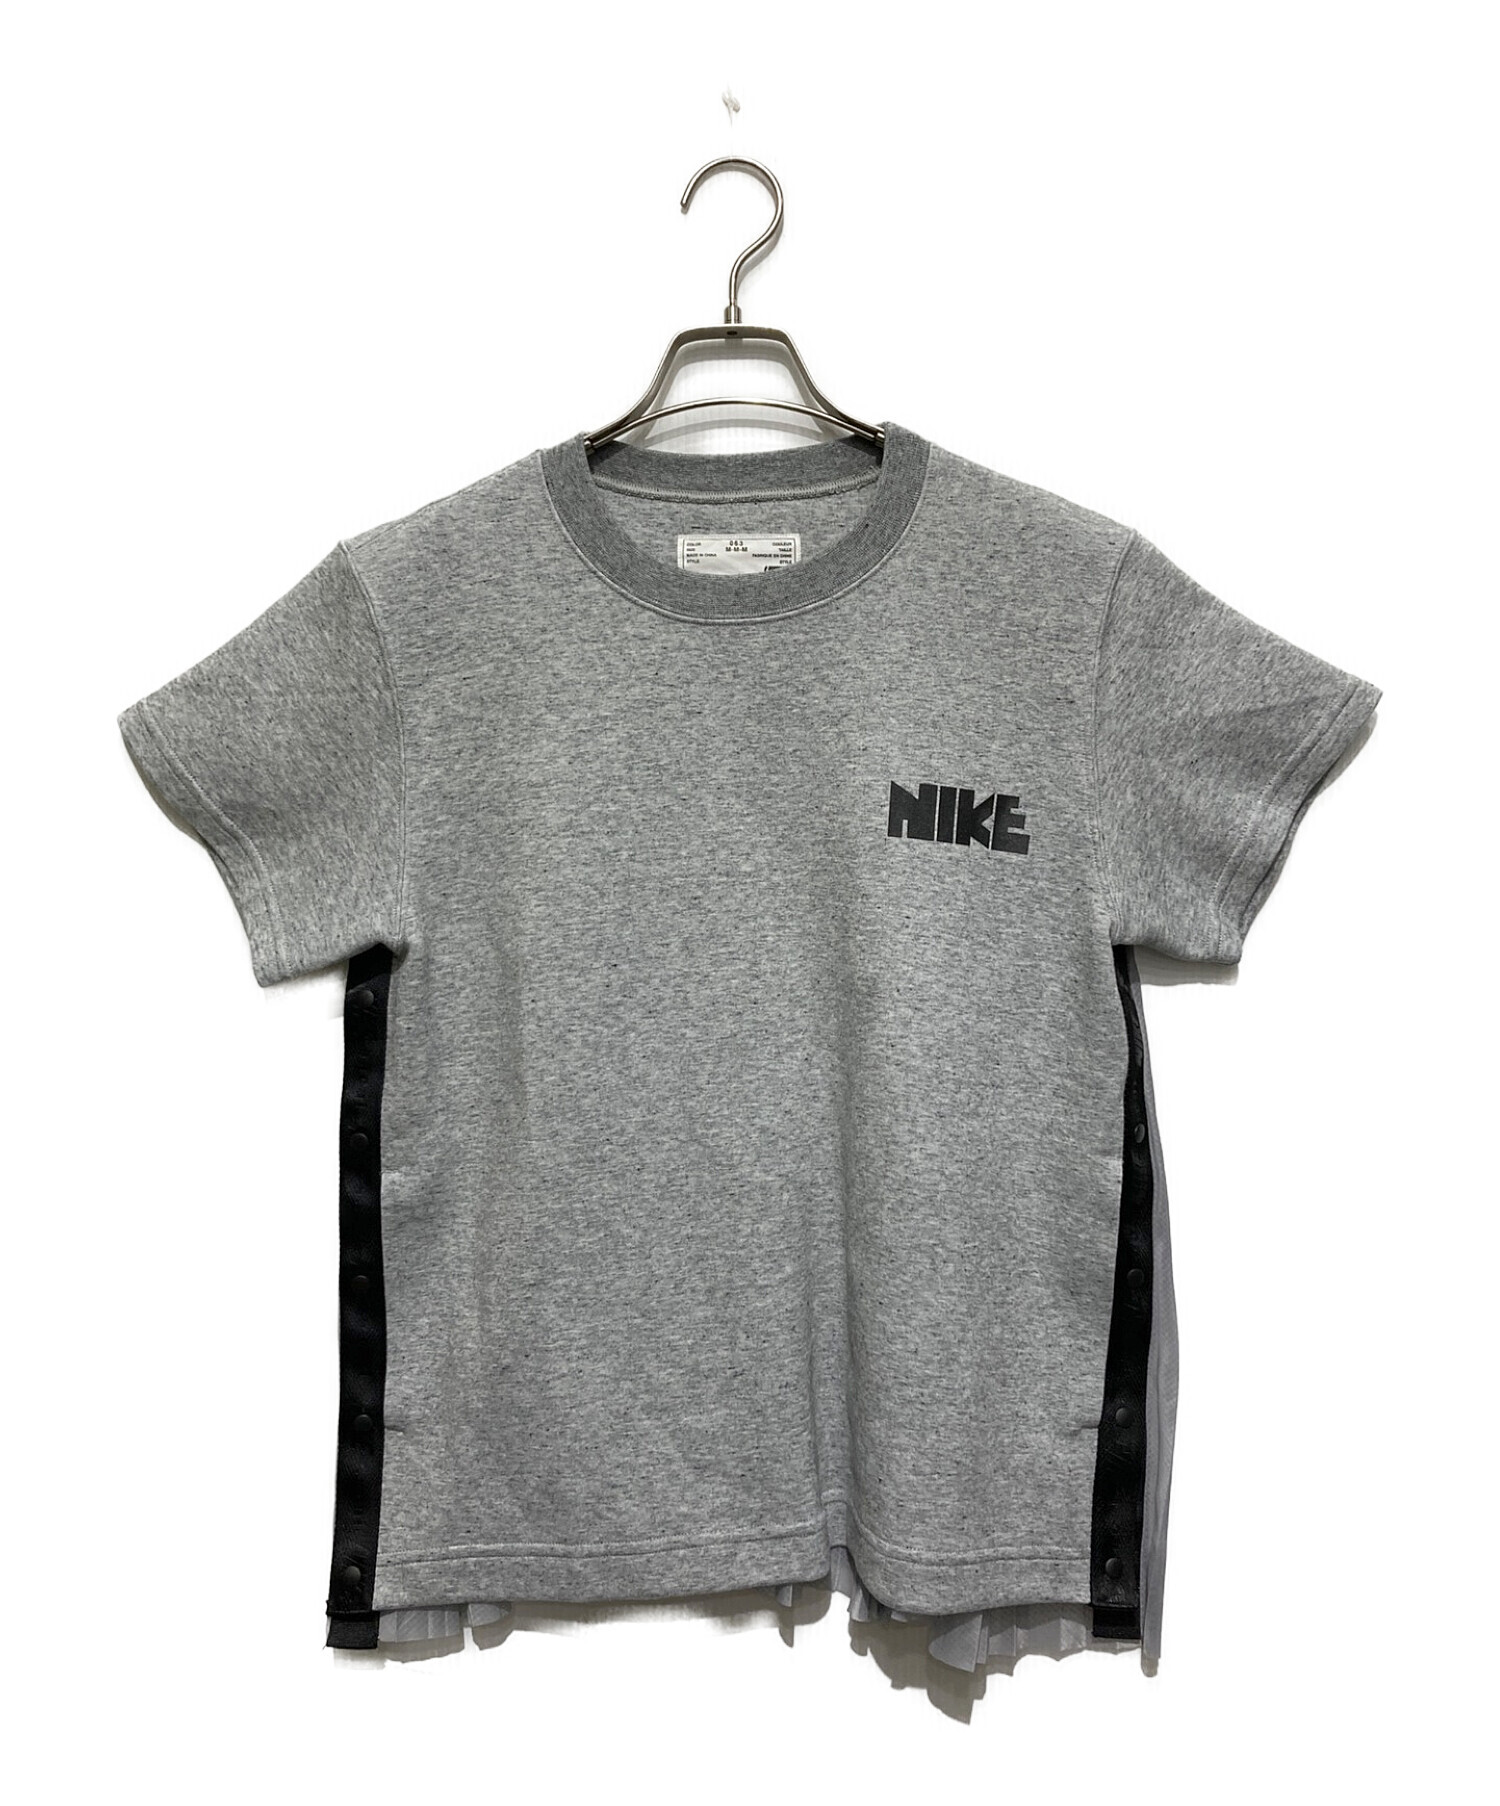 NIKE (ナイキ) sacai (サカイ) バックプリーツTシャツ グレー サイズ:SIZE M